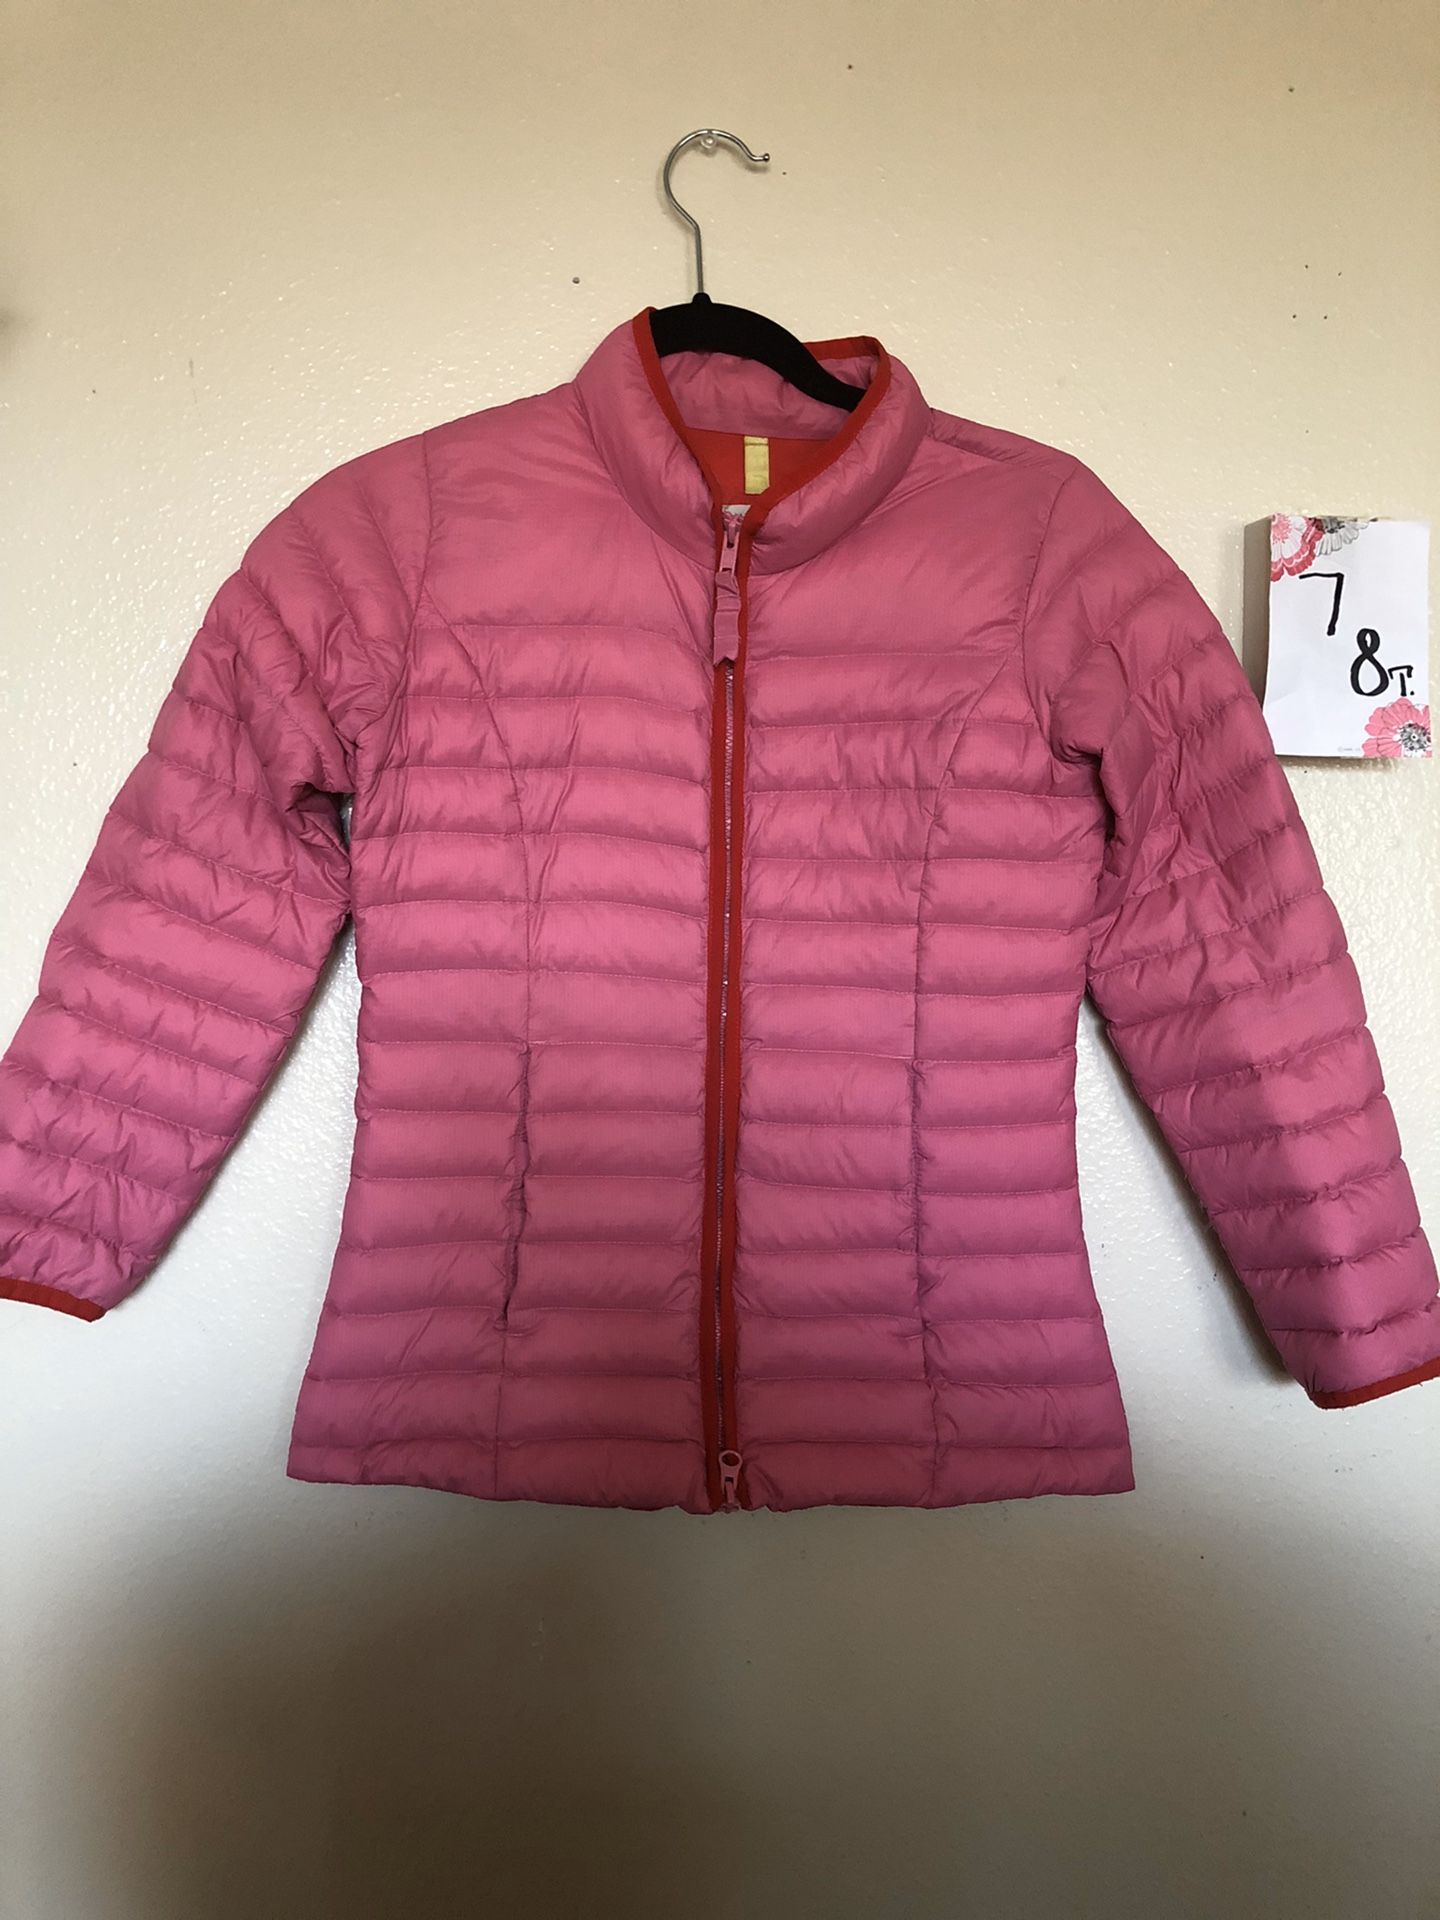 Girls jacket size 7-8🛍👧🏻🎀